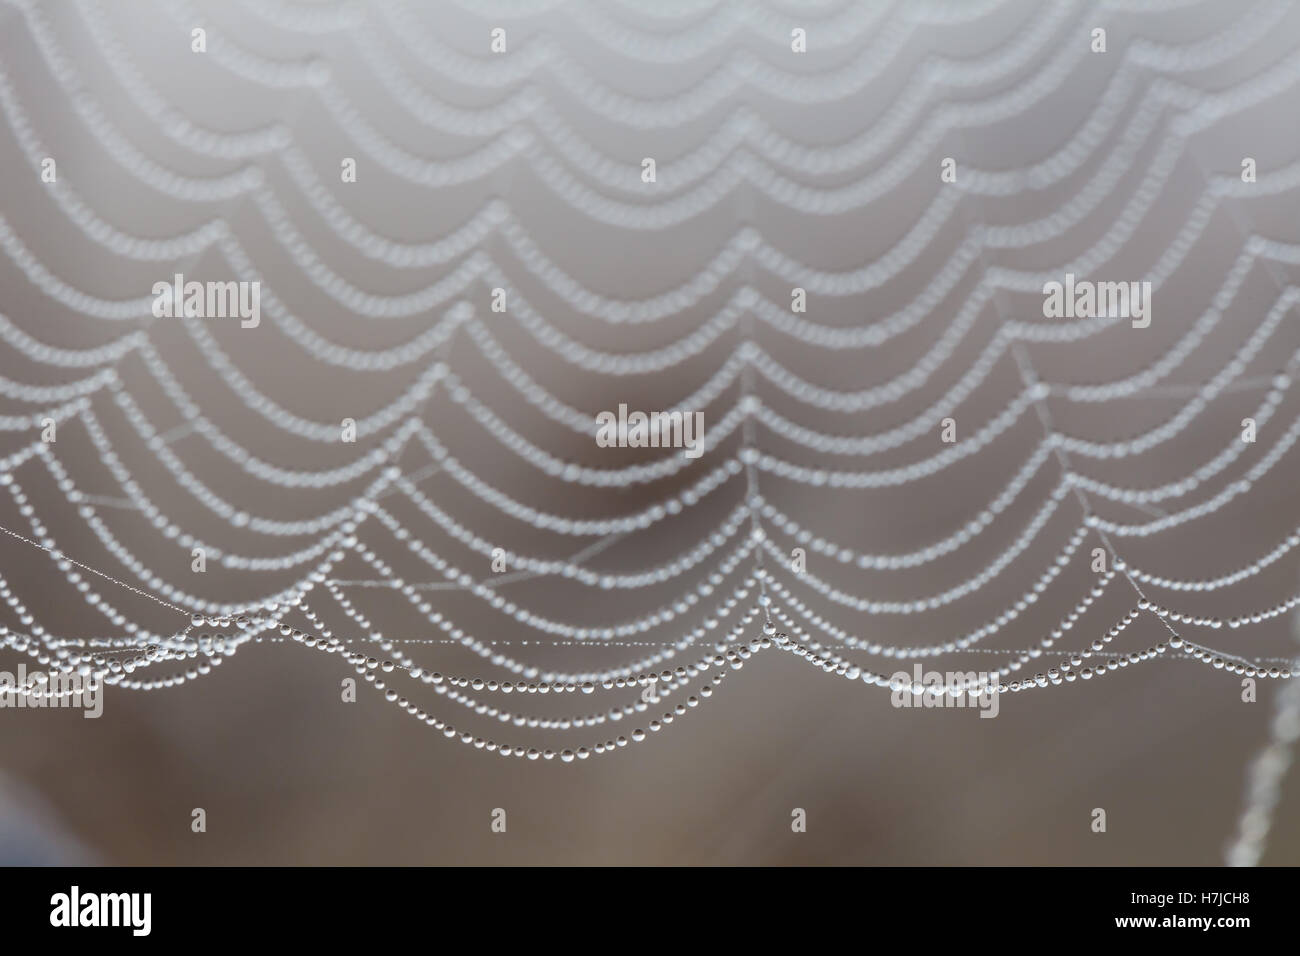 Gouttes d'eau sur spider web, sépia Banque D'Images